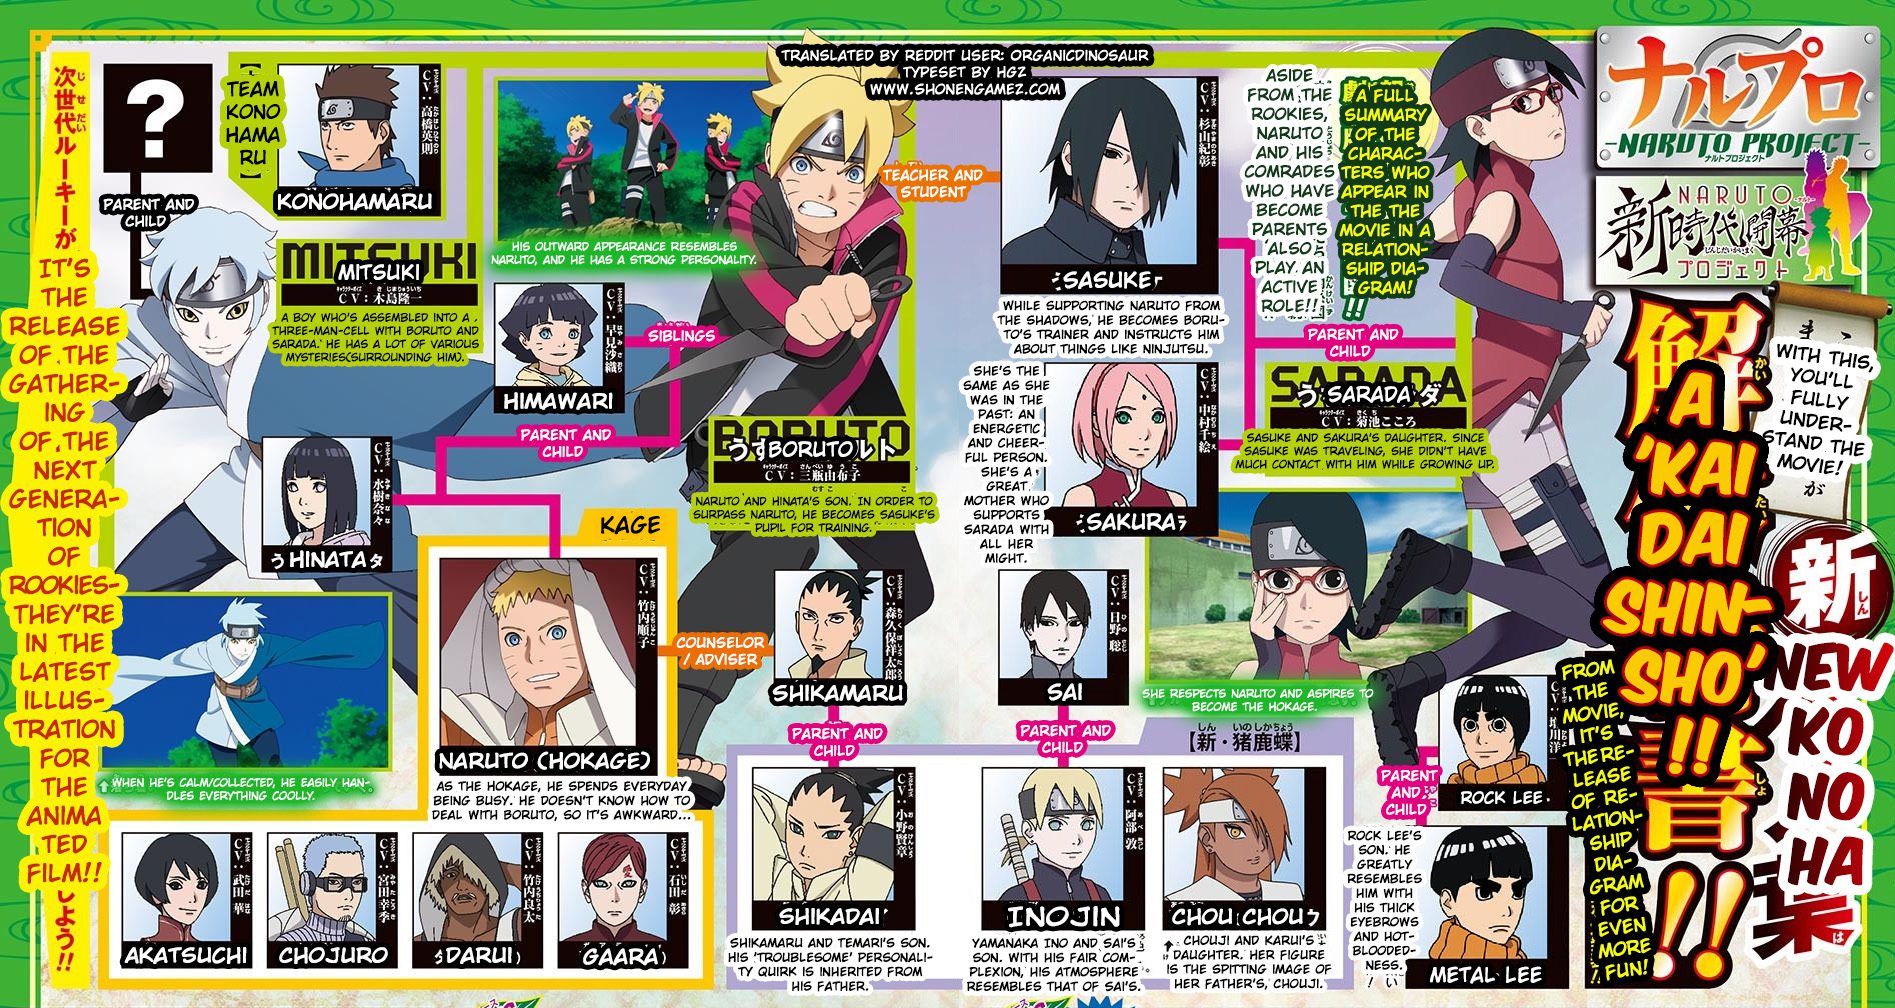 Boruto: Naruto The Movie - Rock Lee, Gaara & Darui's Children & More Shown Off In WSJ - ShonenGames